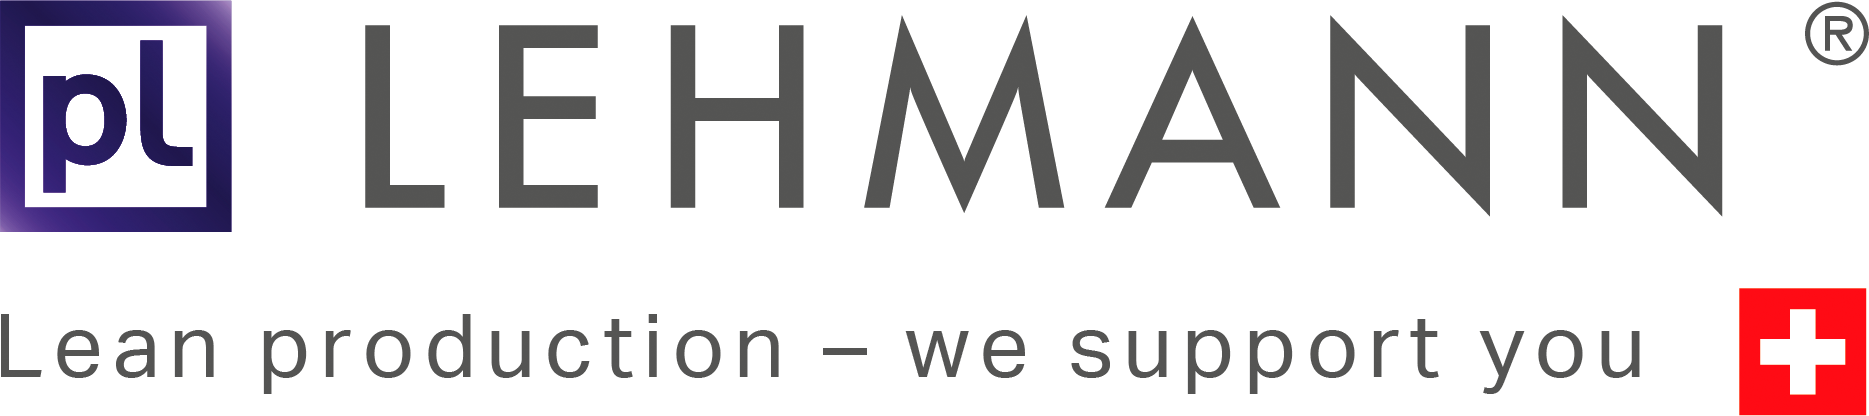 lehmann_logo.png